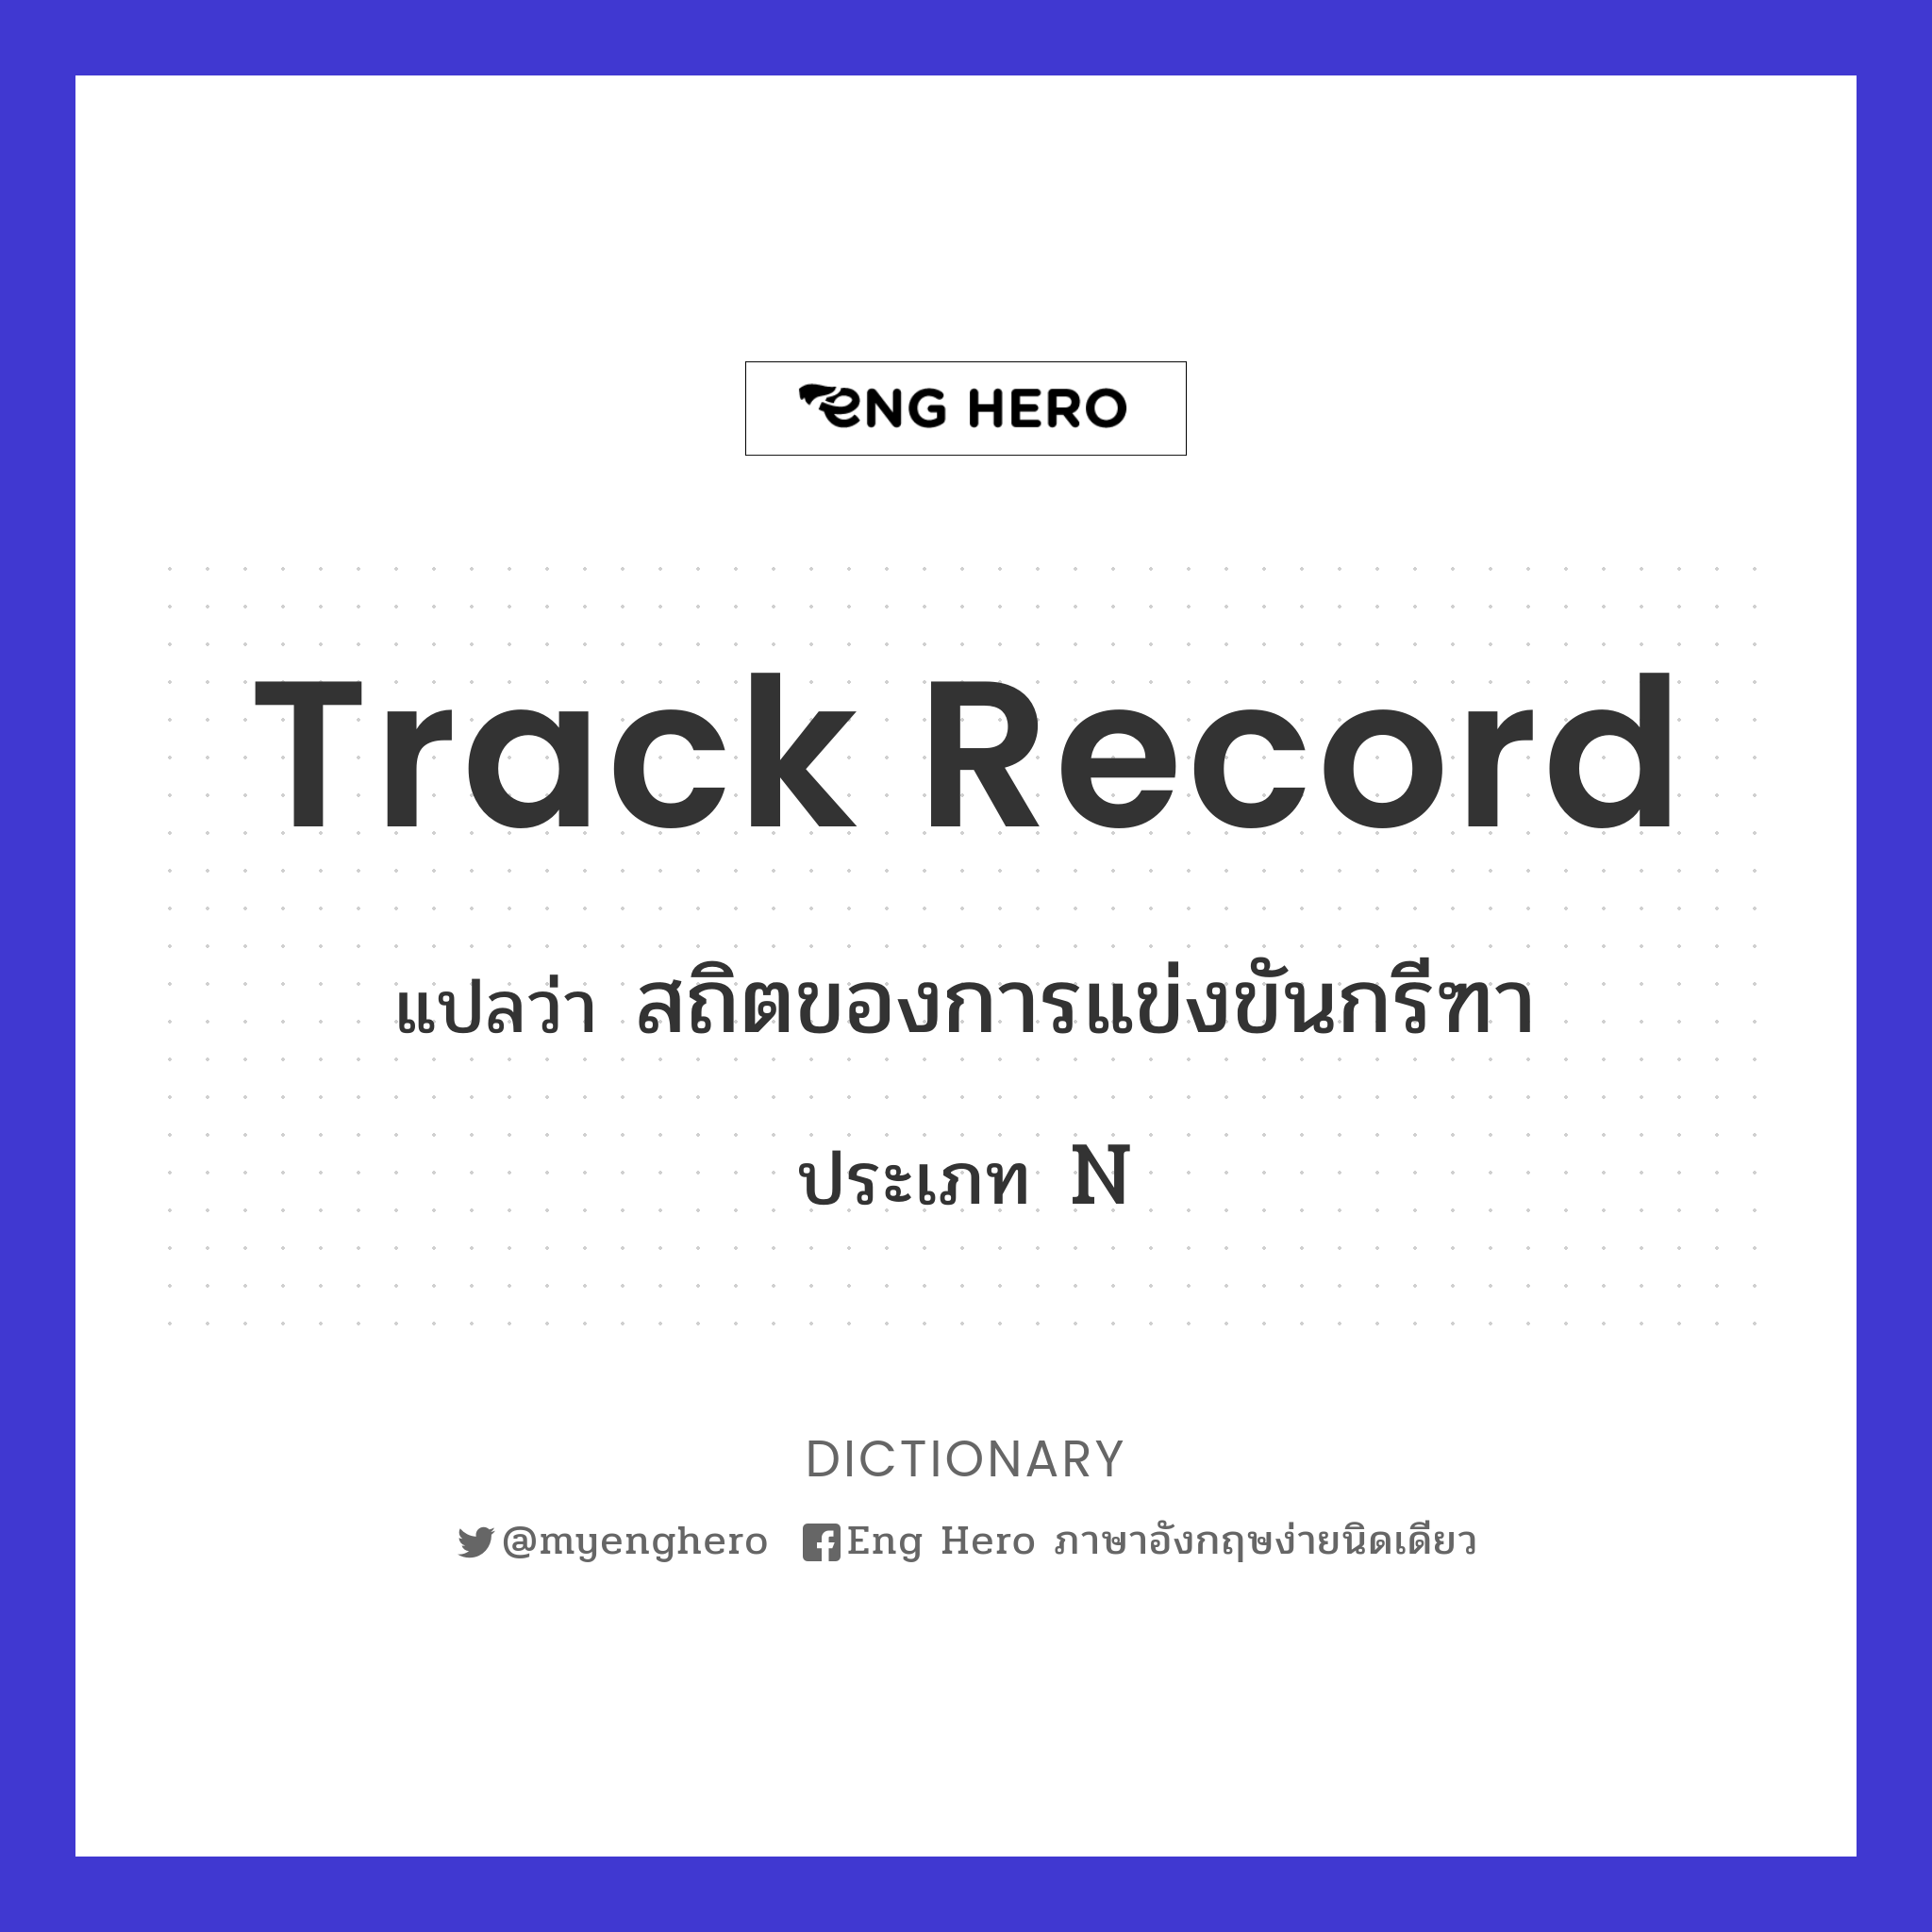 track record